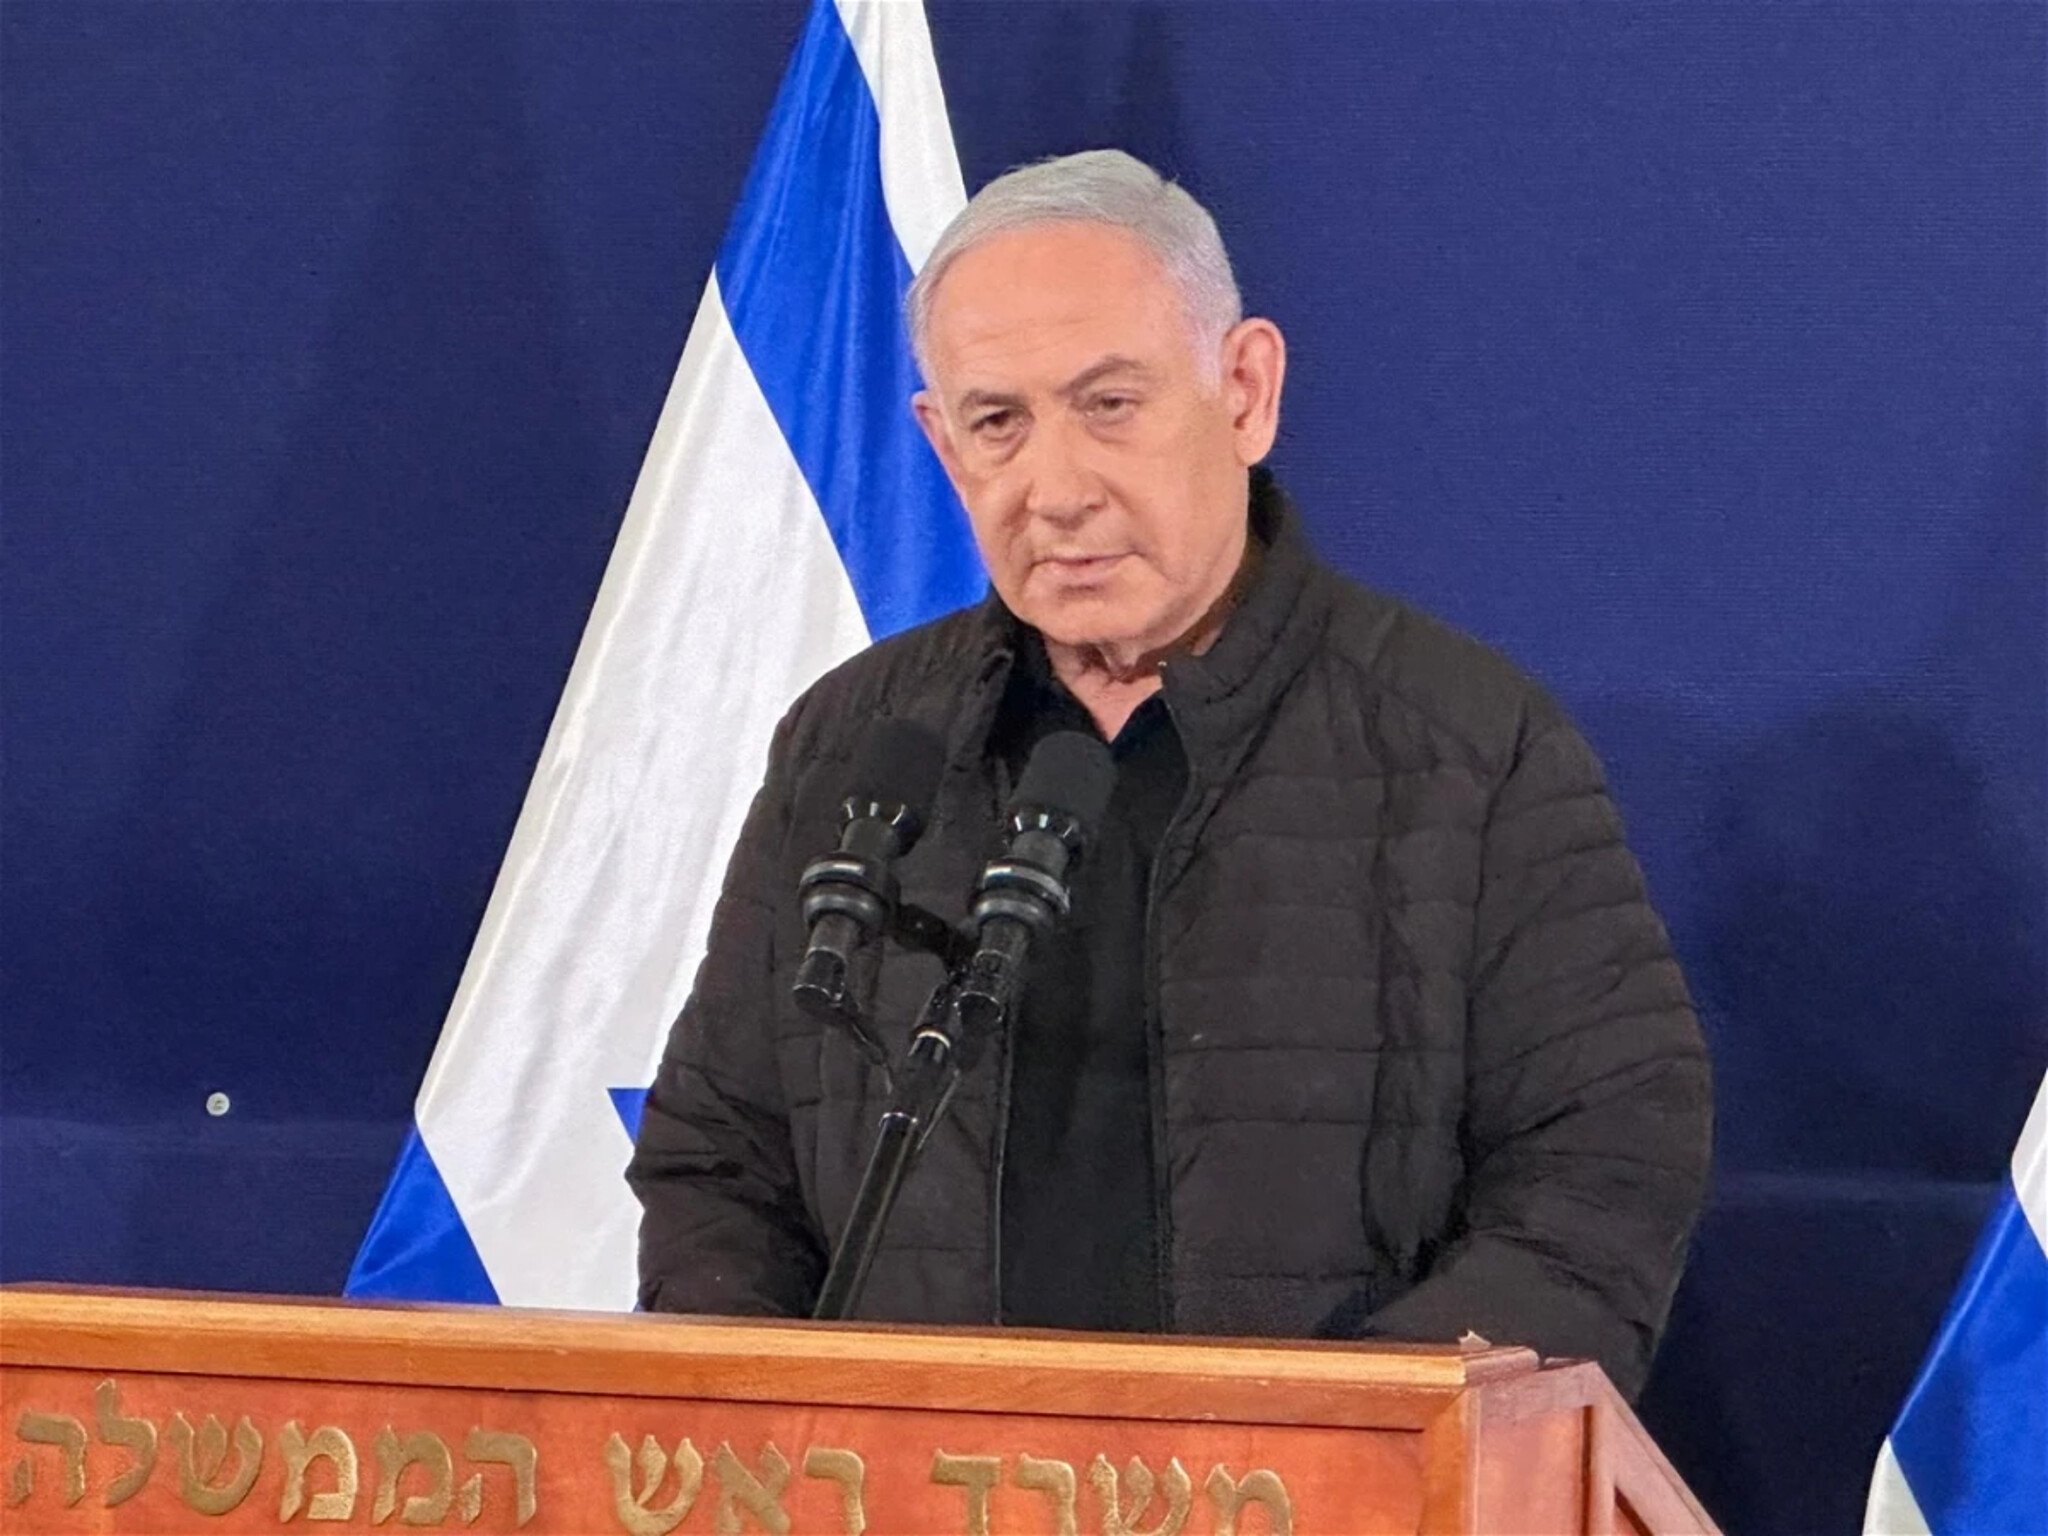  رئيس الوزراء الاسرائيلي يرفض وقف القتال في غزة.. ويوضح خطة "السيطرة الأمنية"